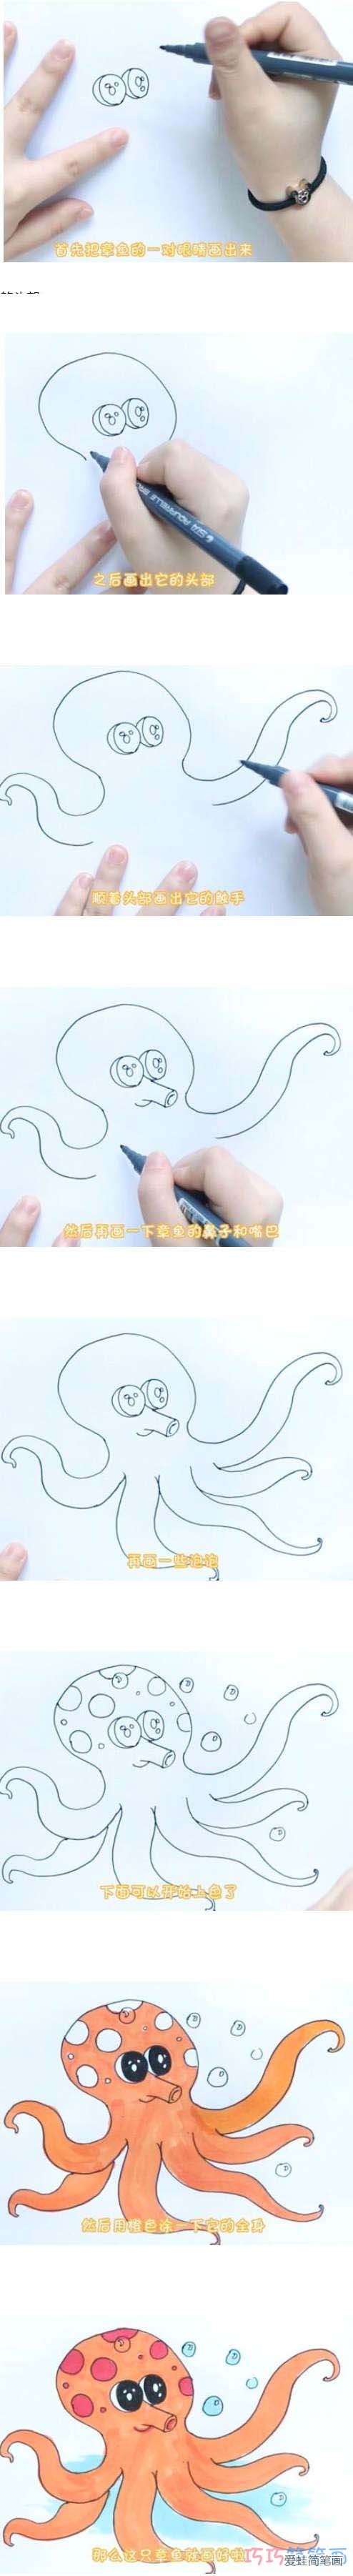 教你如何画章鱼简笔画